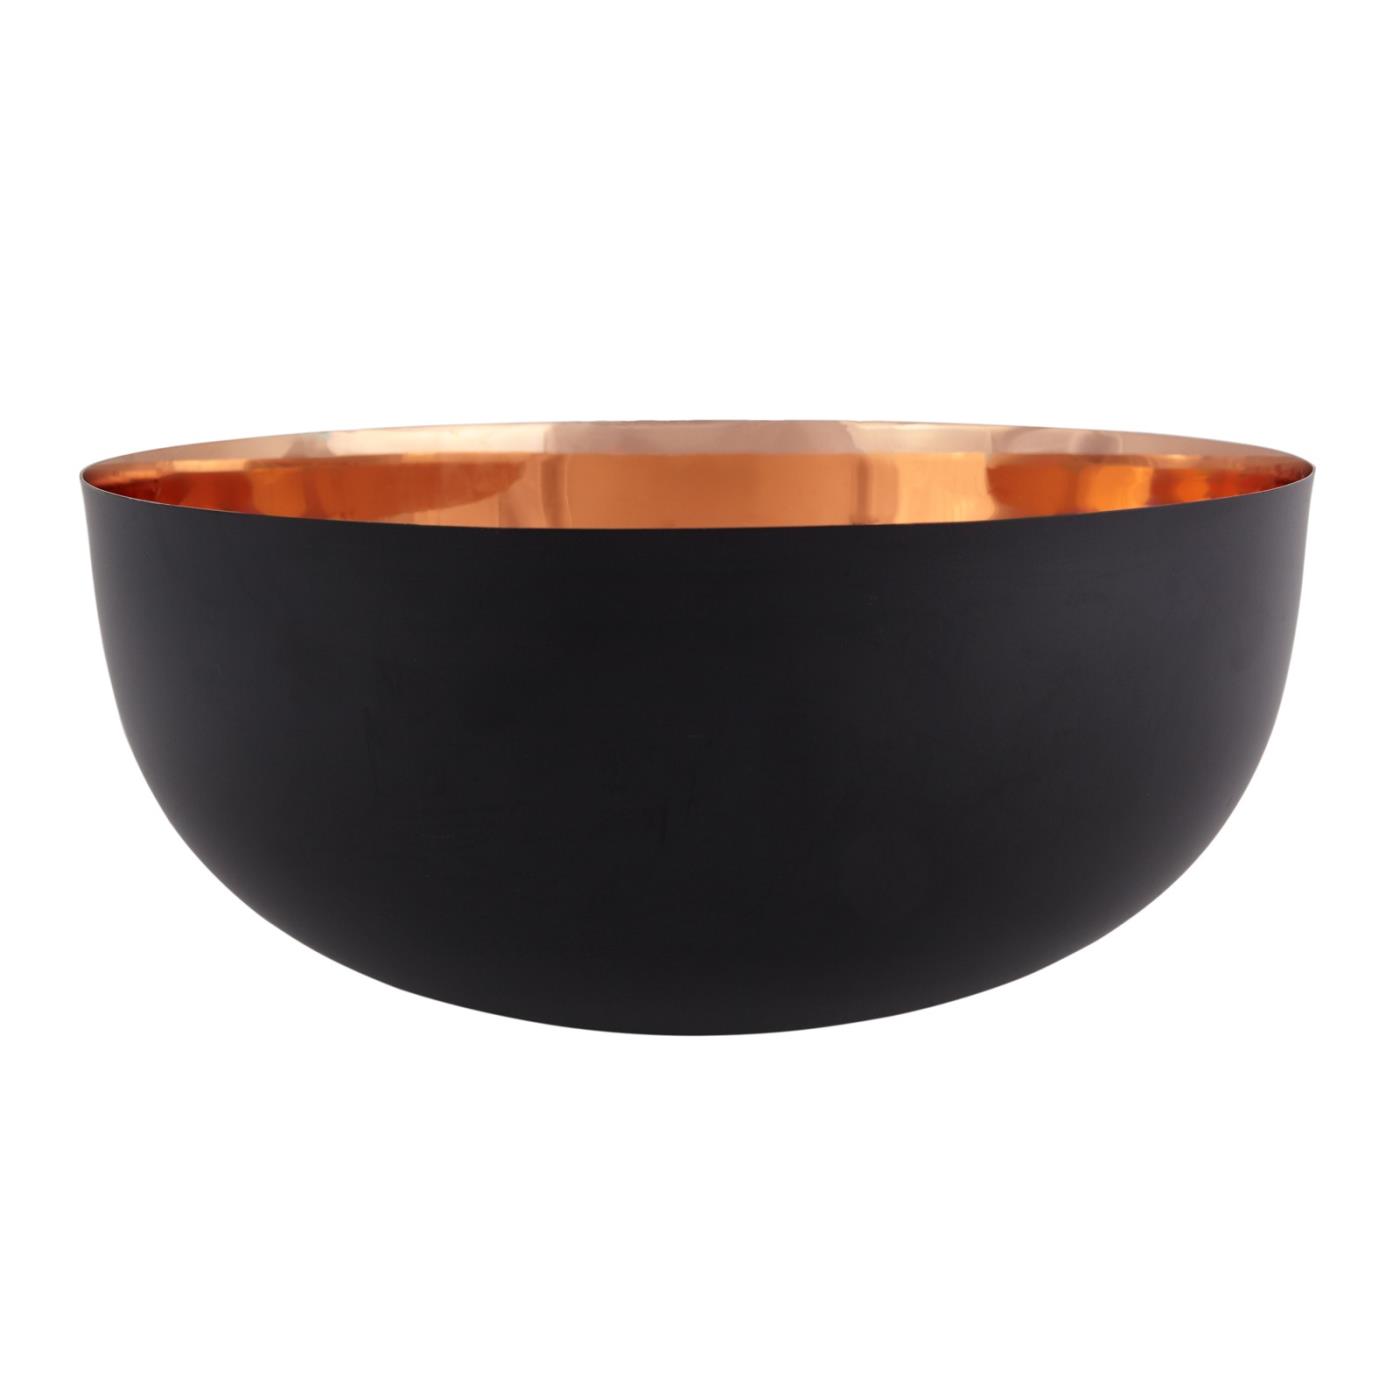 Black Enamel Copper Bowl - 14.5"